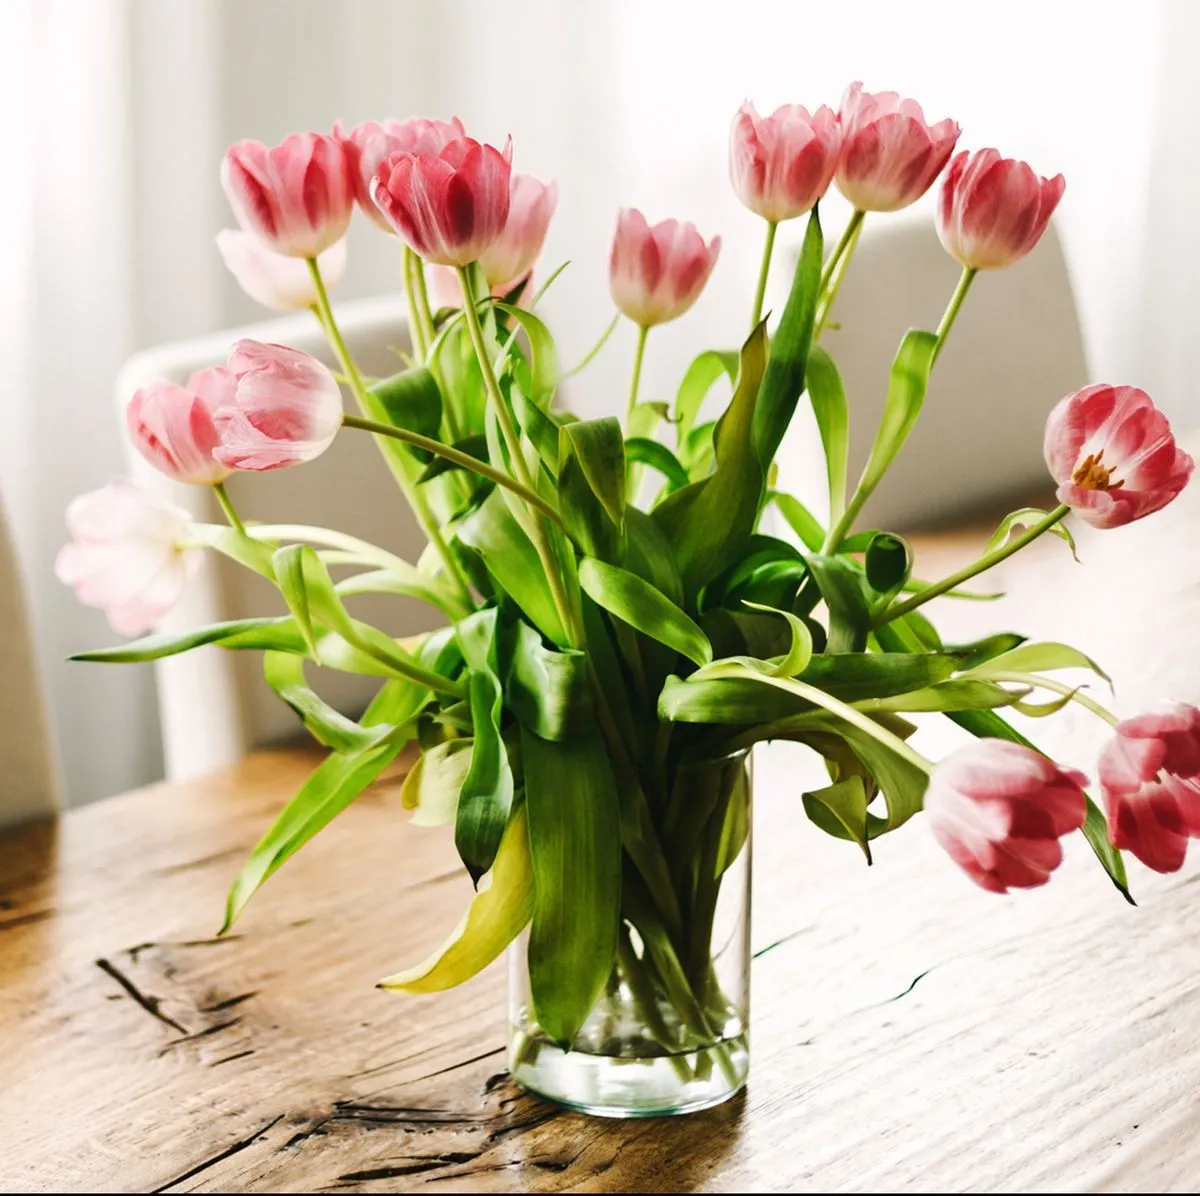 tulpen in der vase laenger haltbar machen ist sehr einfach